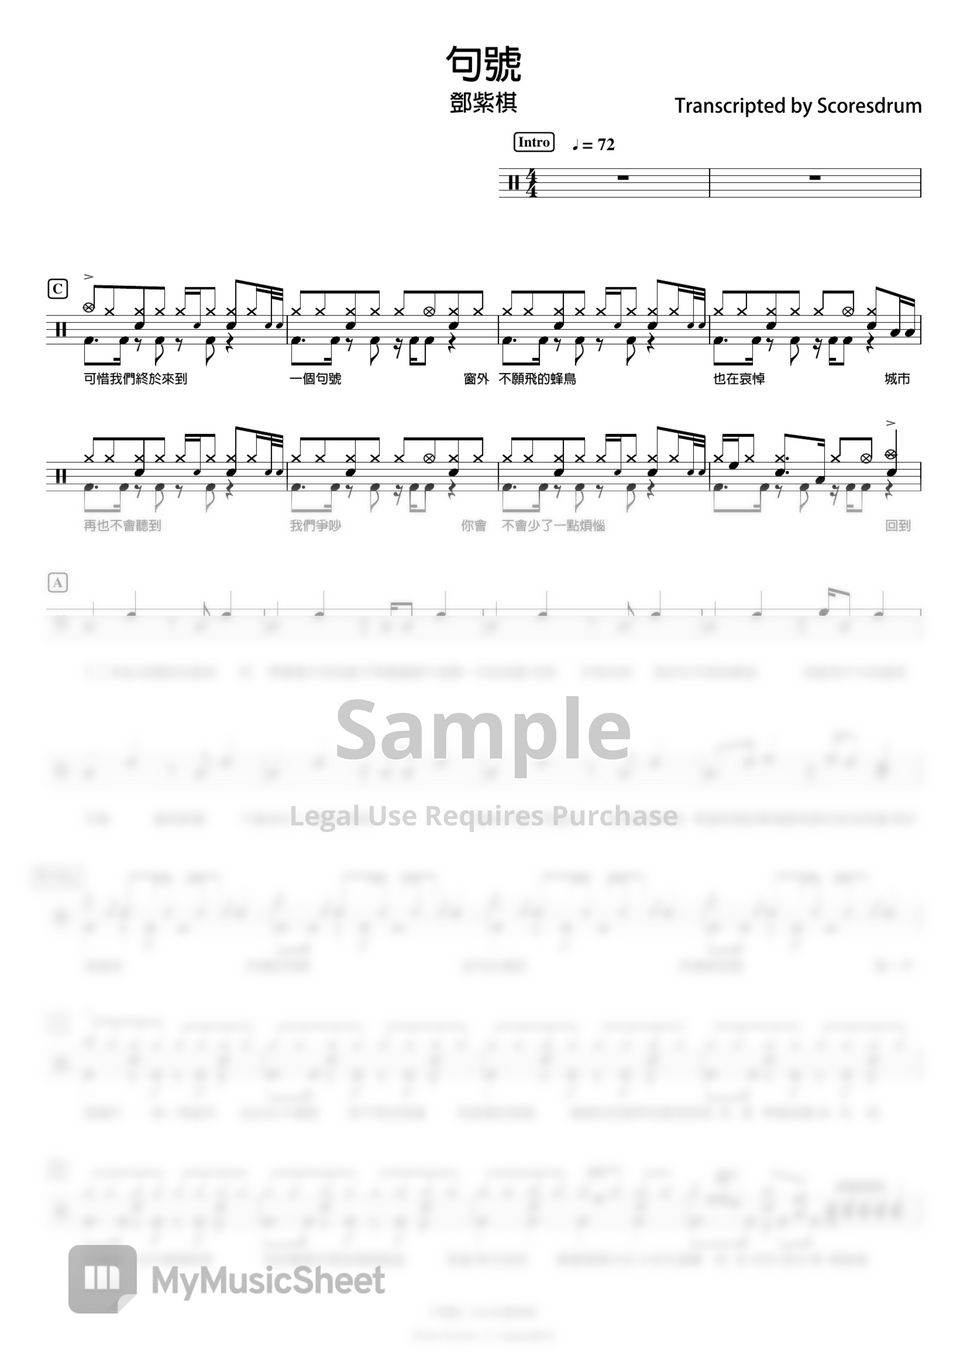 鄧紫棋 - 句號 (drum) by Scoresdrum